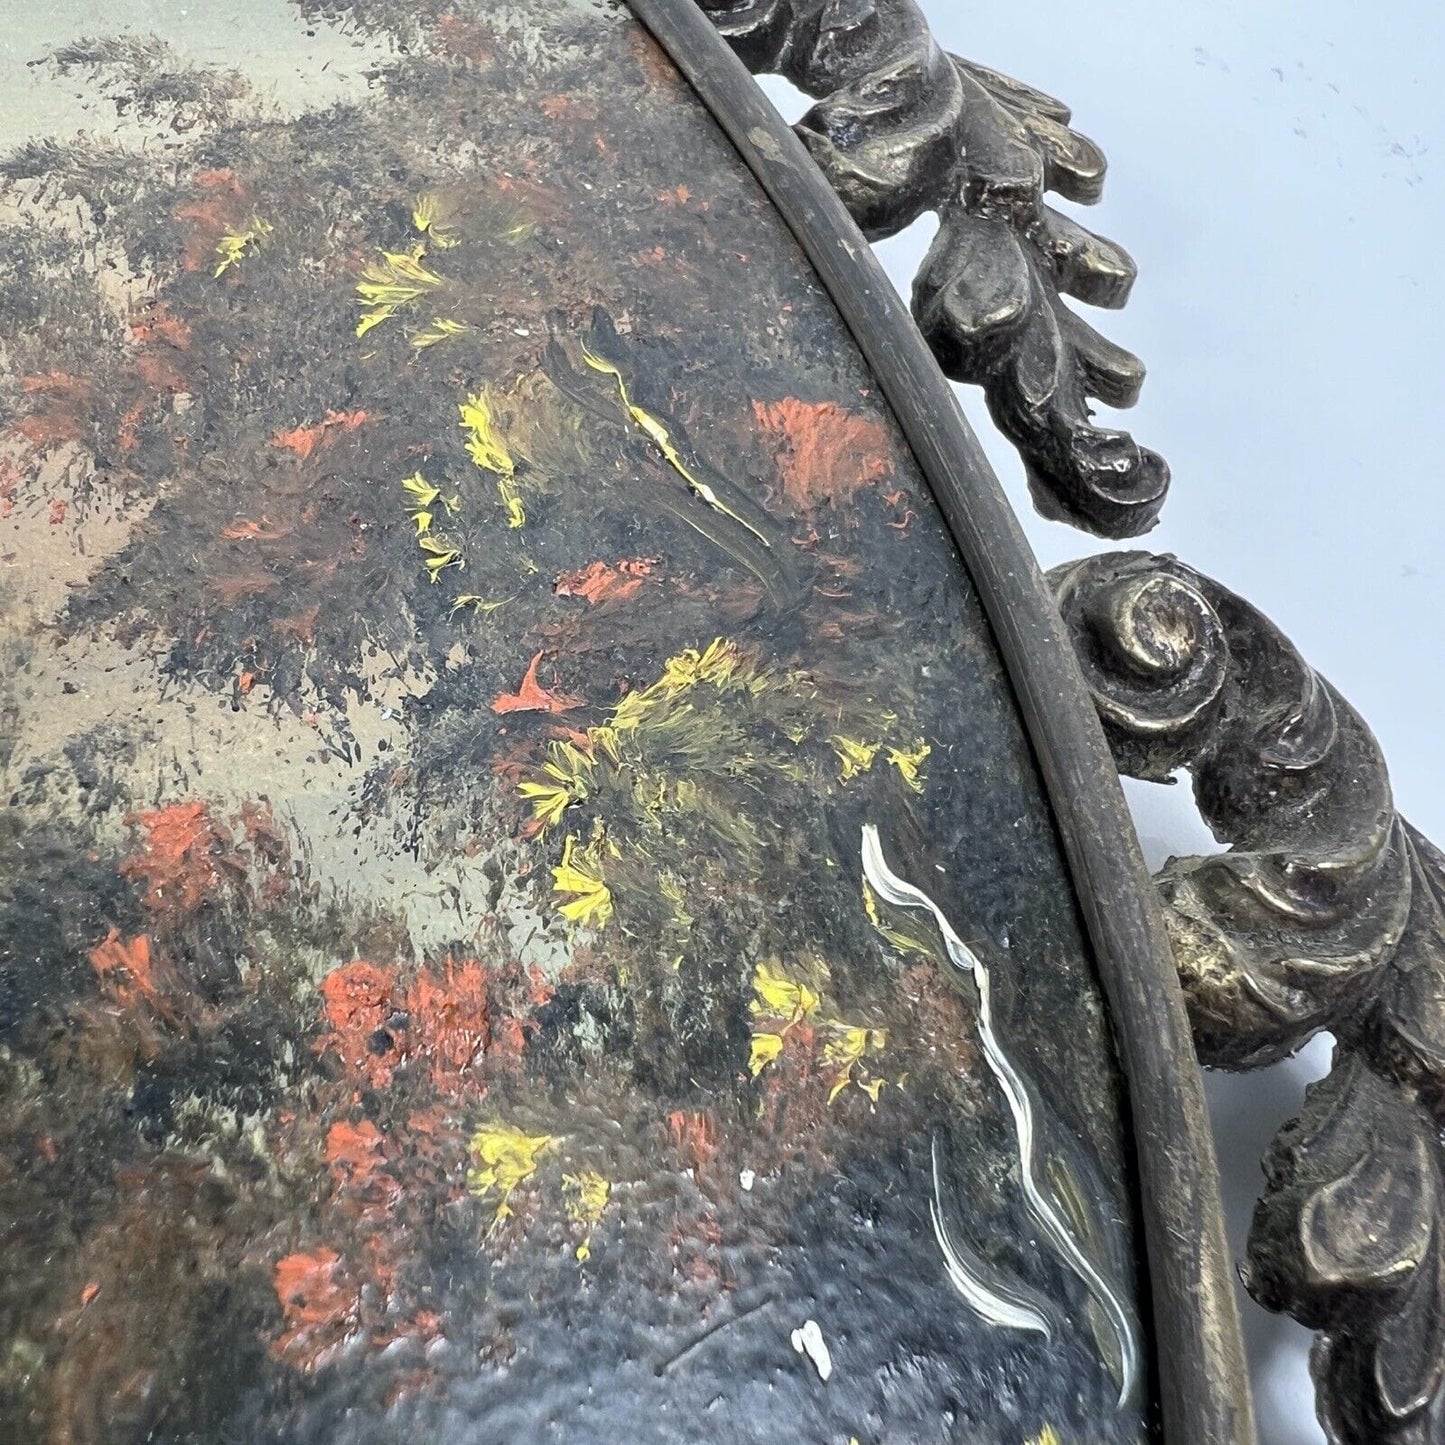 Quadretto antico vintage ovale dipinto con paesaggio cornice in ottone lavorato Categoria  Quadri